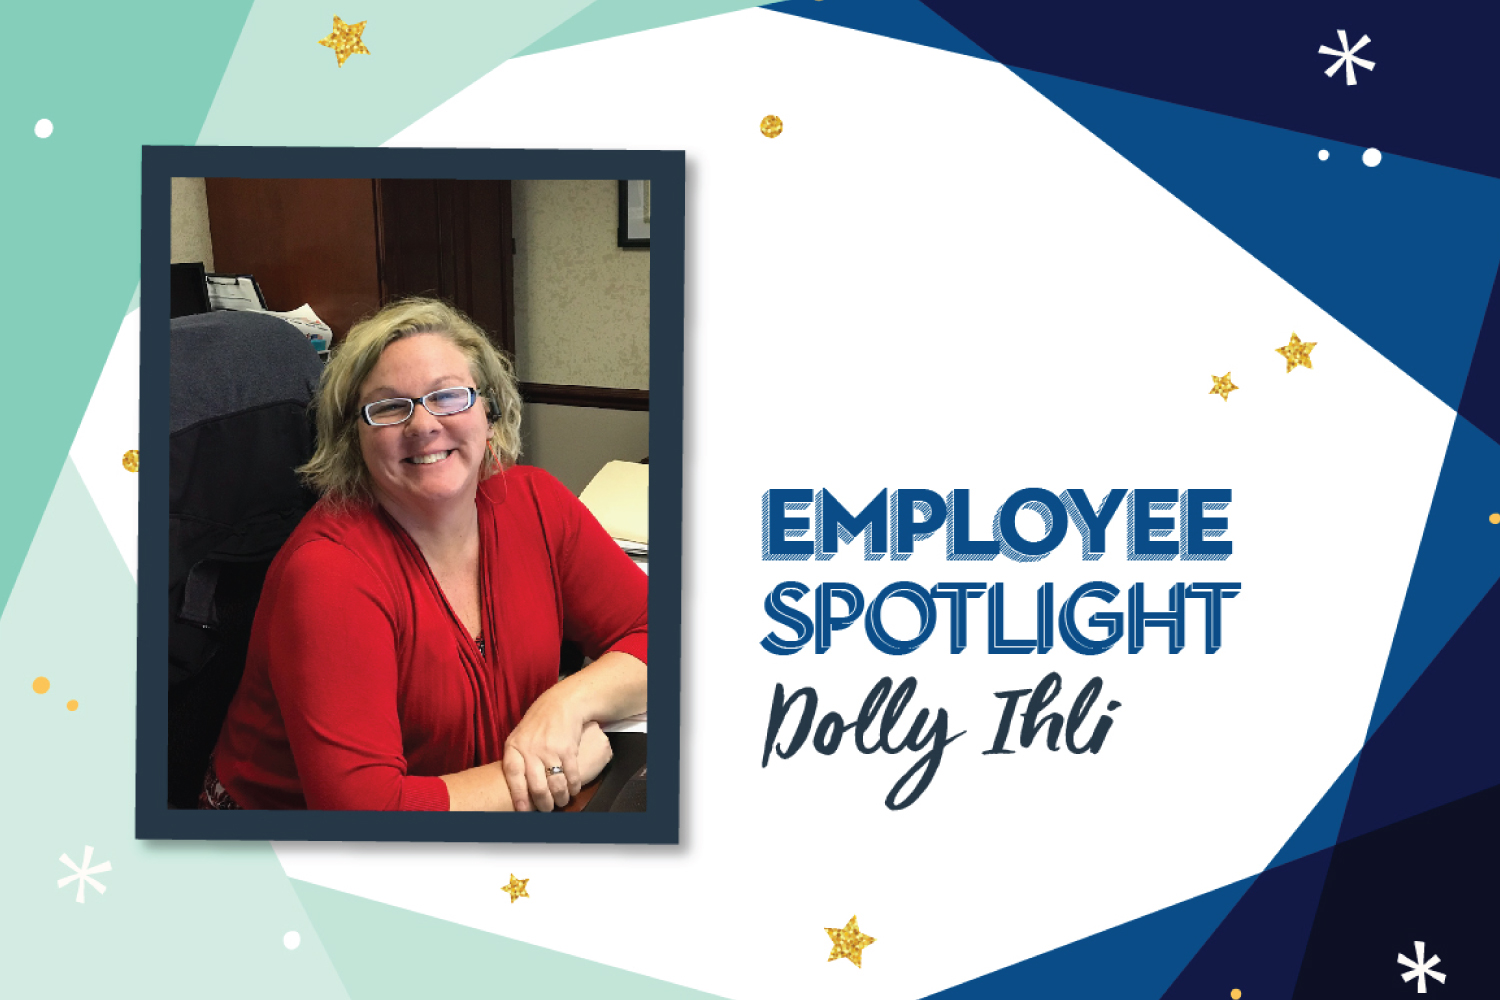 Employee Spotlight: Dolly Ihli